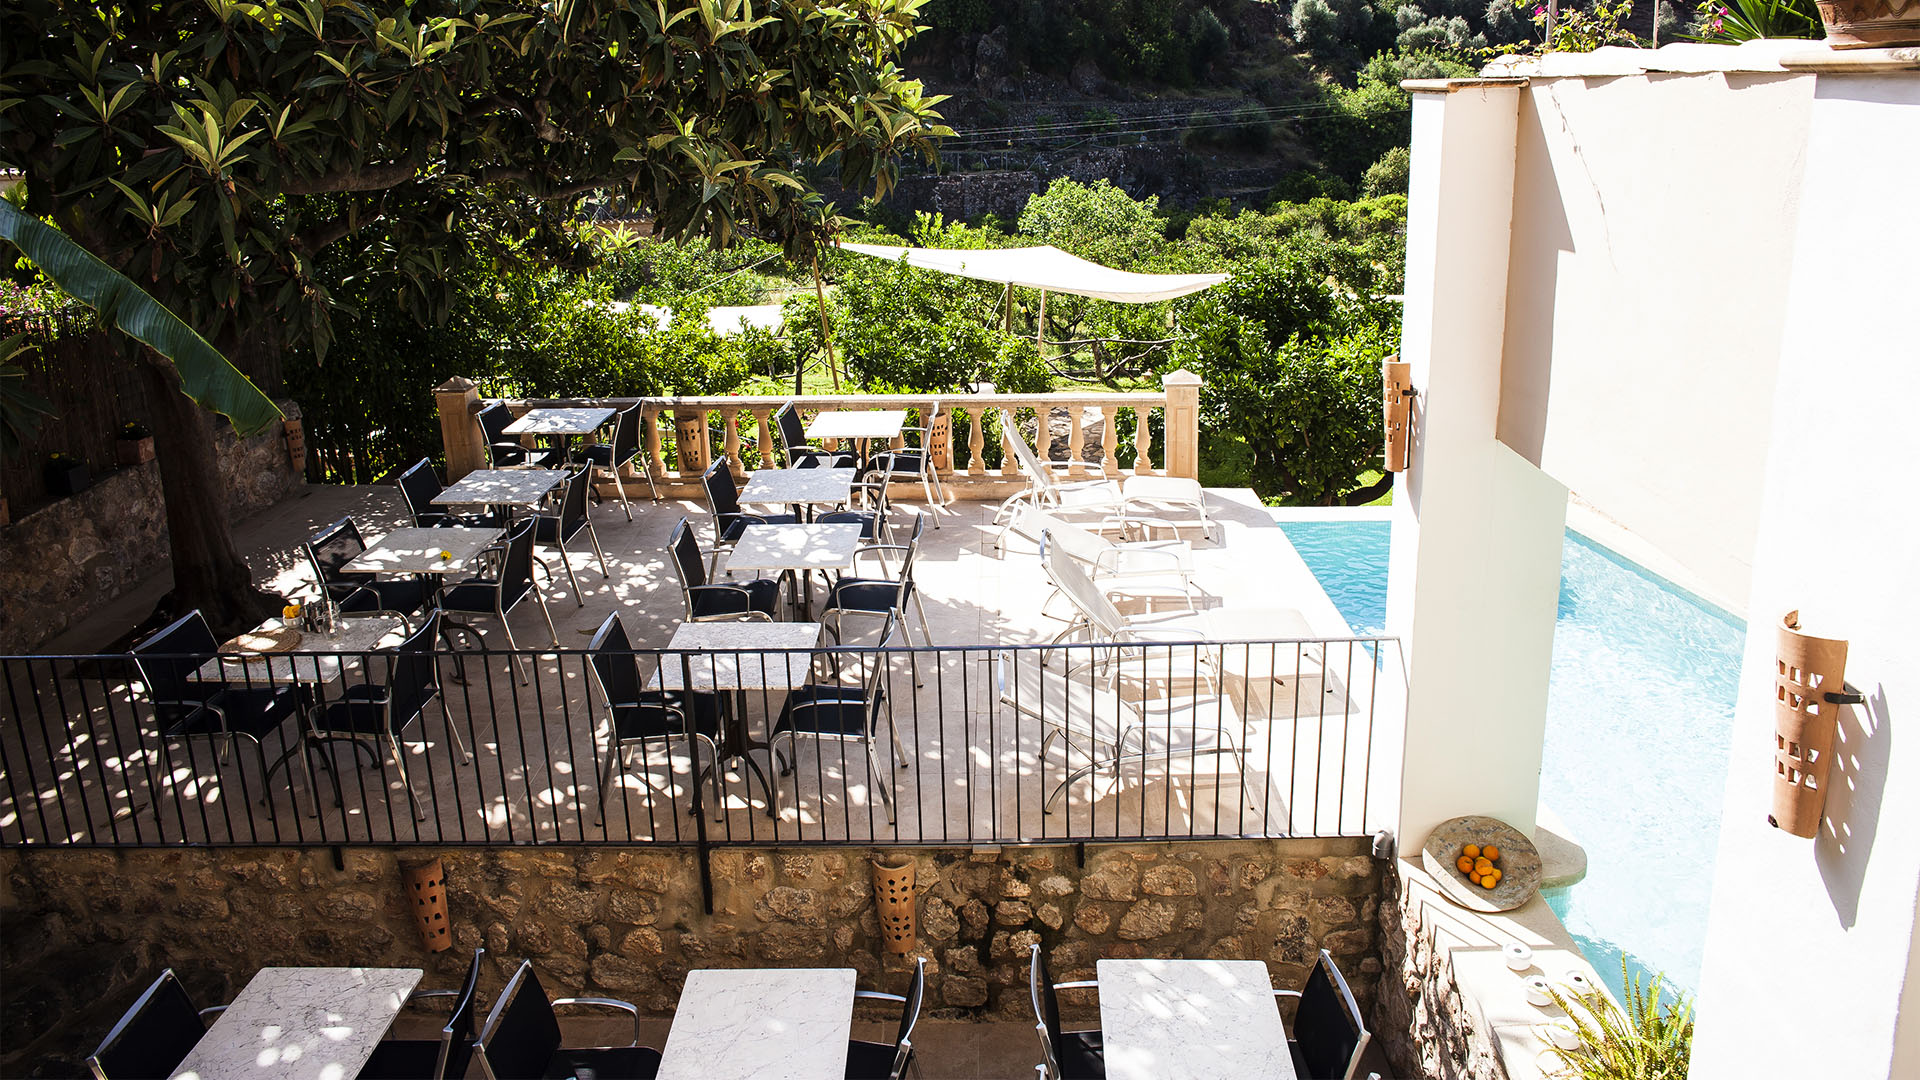 Das Petit Hotel Fornalutx auf Mallorca eine Augenweide und Refugium auf Mallorca.